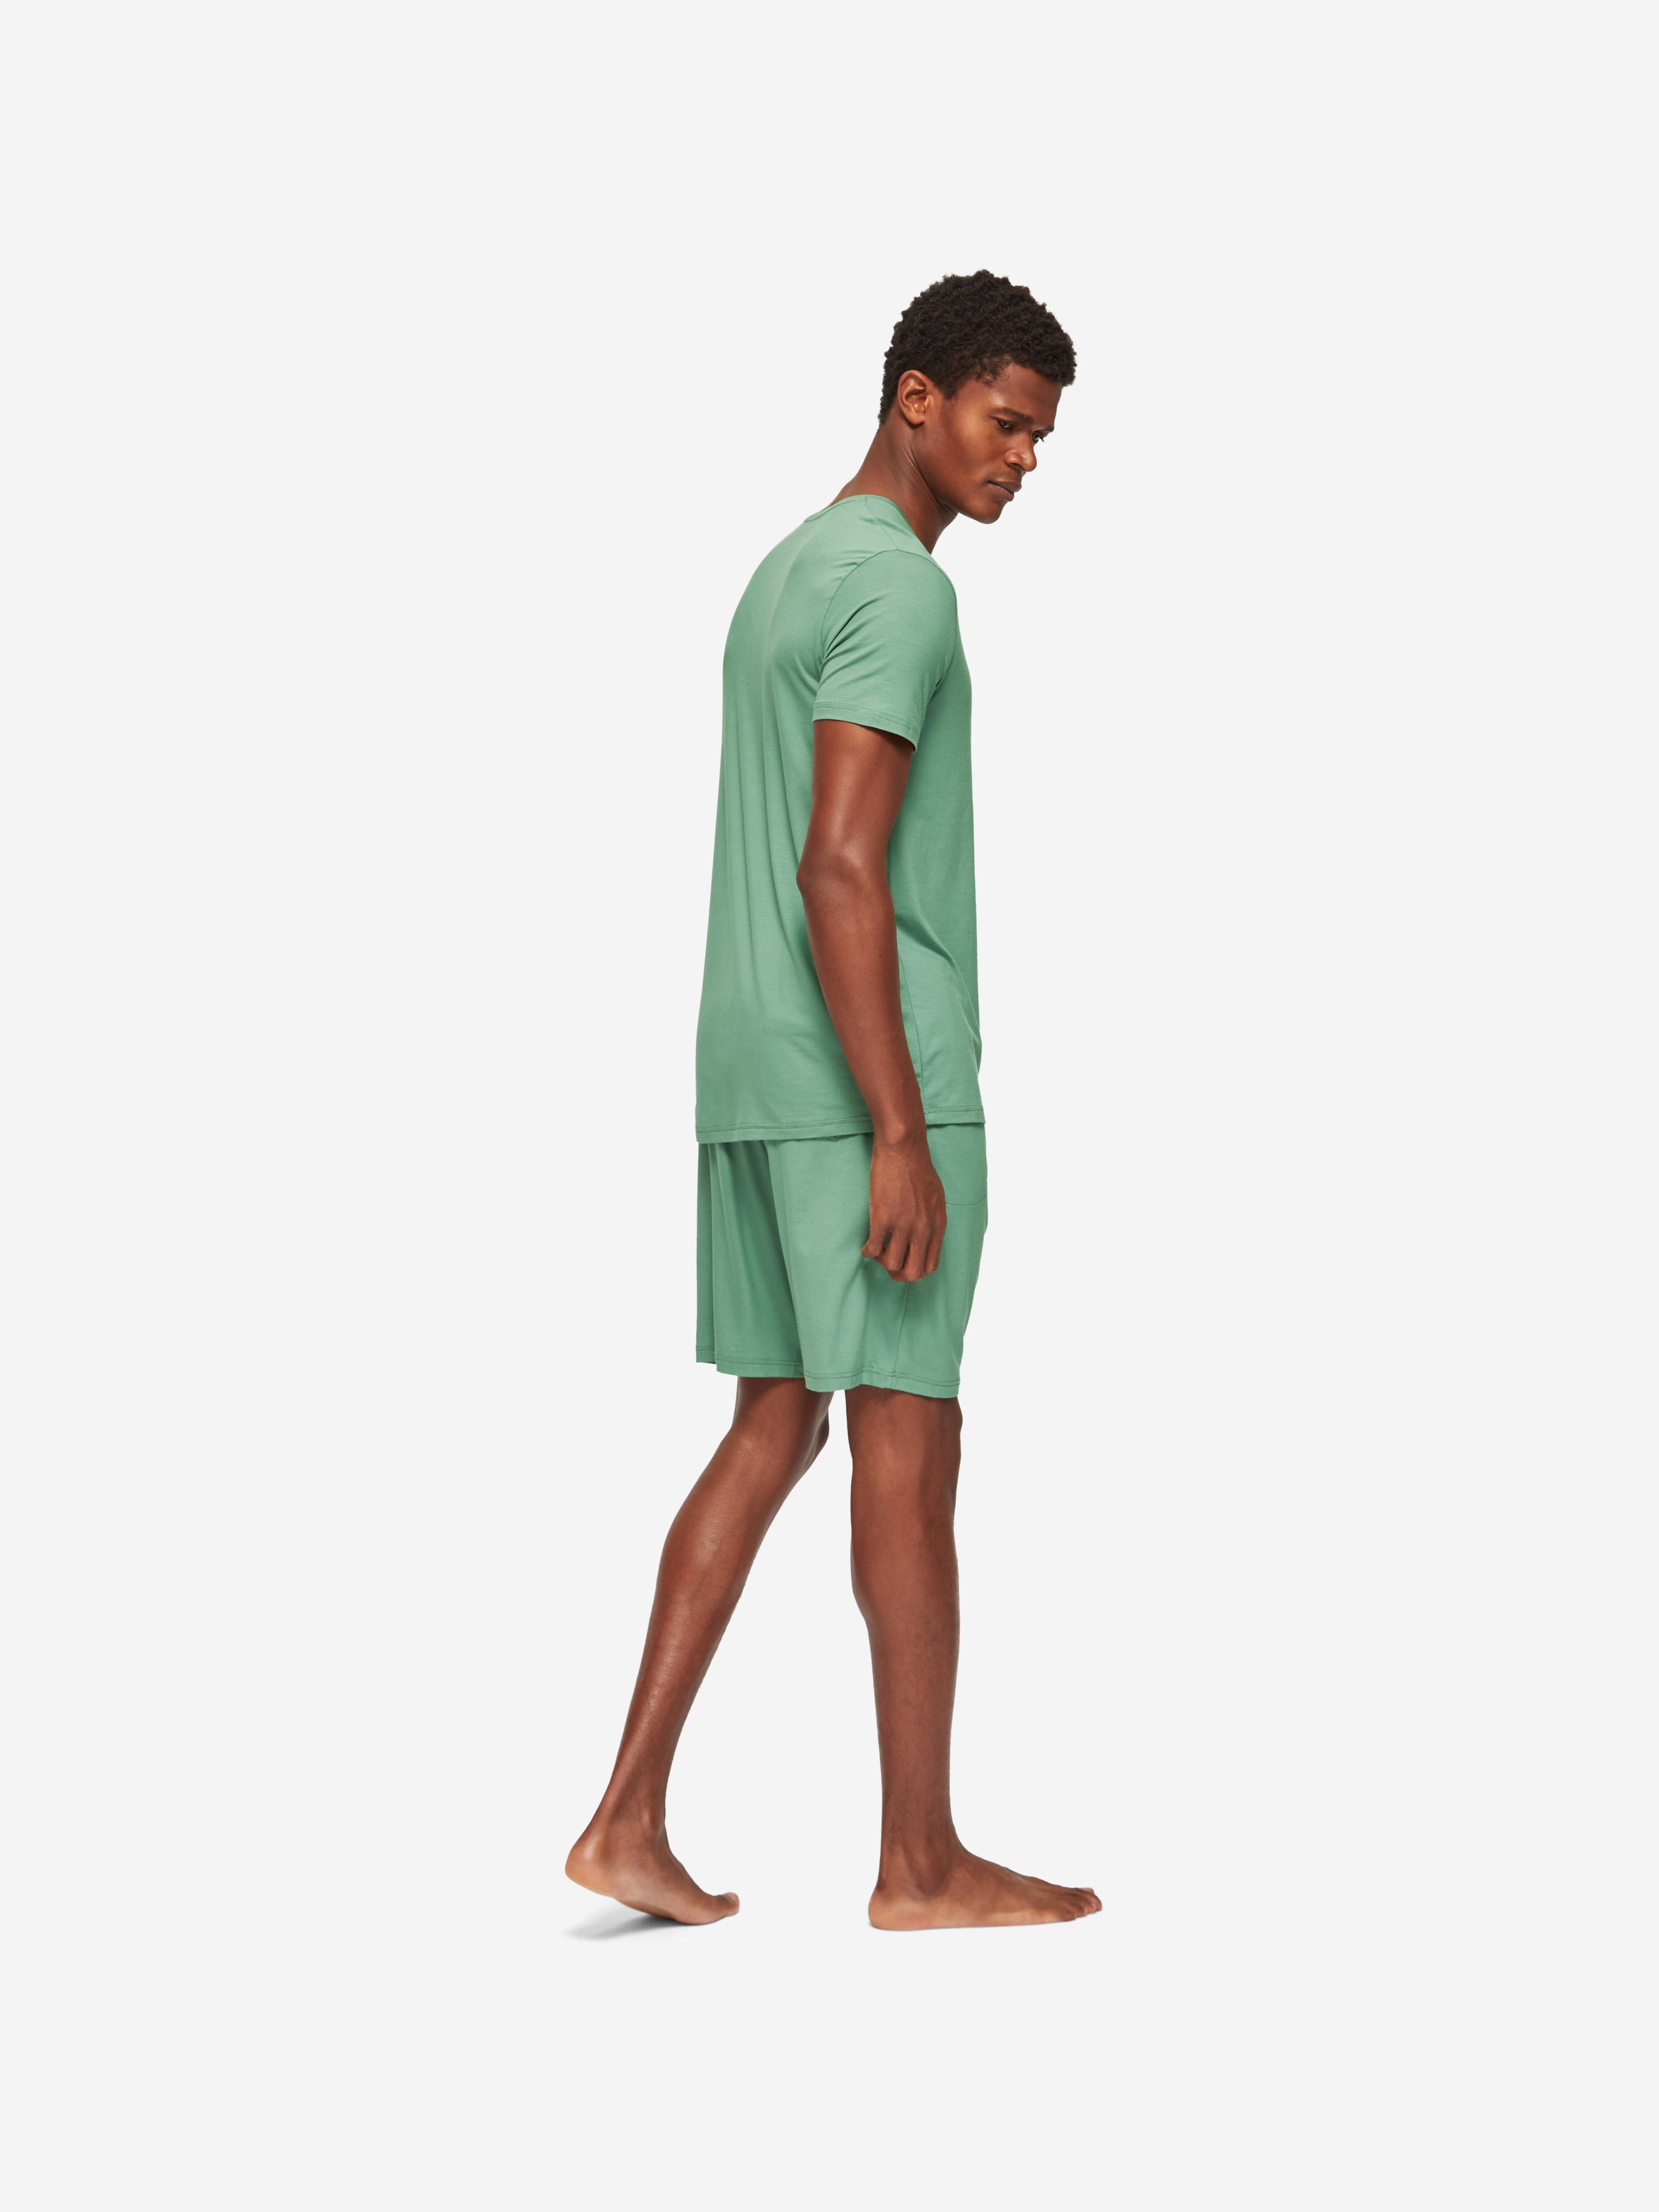 Men's Lounge Shorts Basel Micro Modal Stretch Sage Green